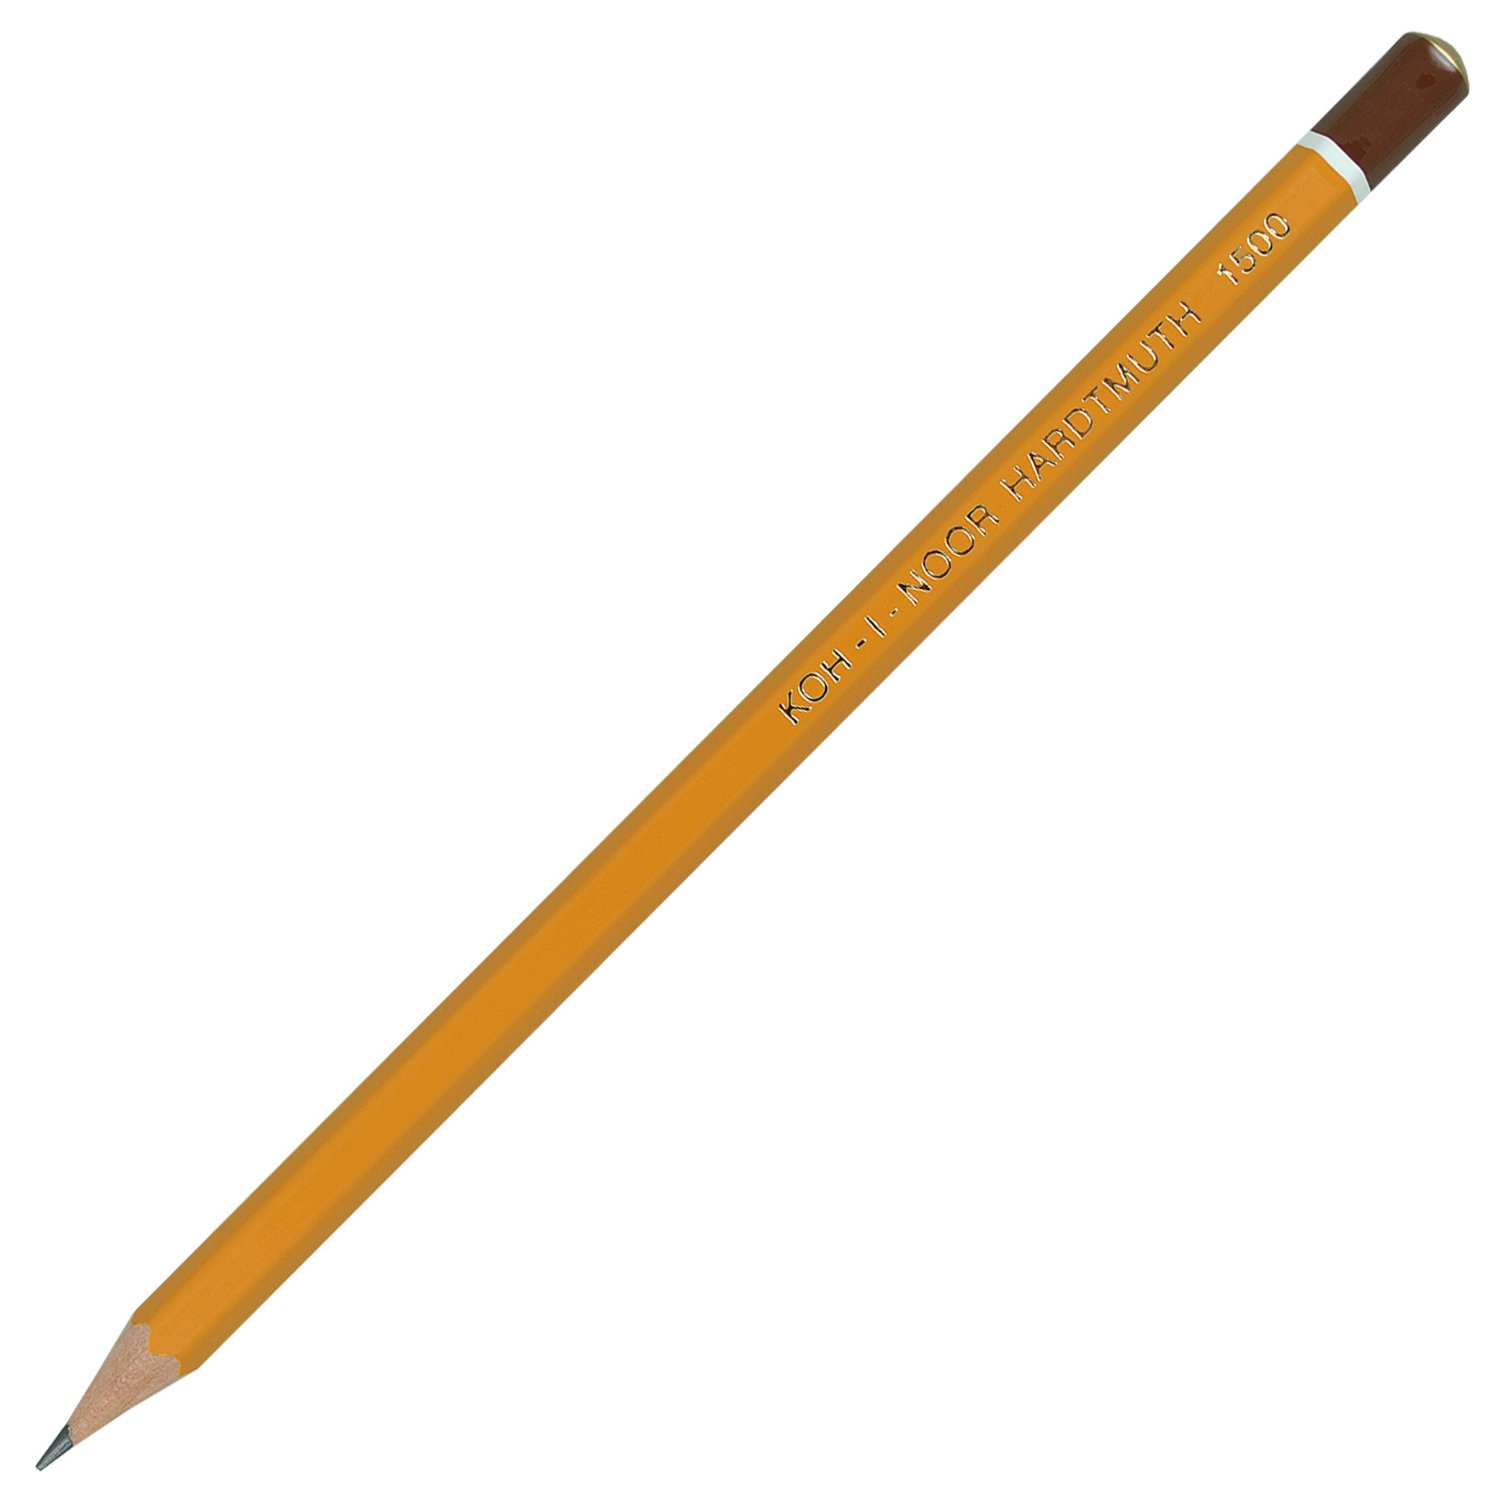 Олівець Koh-I-Noor графітний‚ 6Н, загострений, ціна за 1 олівець, упаковка 12 штук 1500.6H